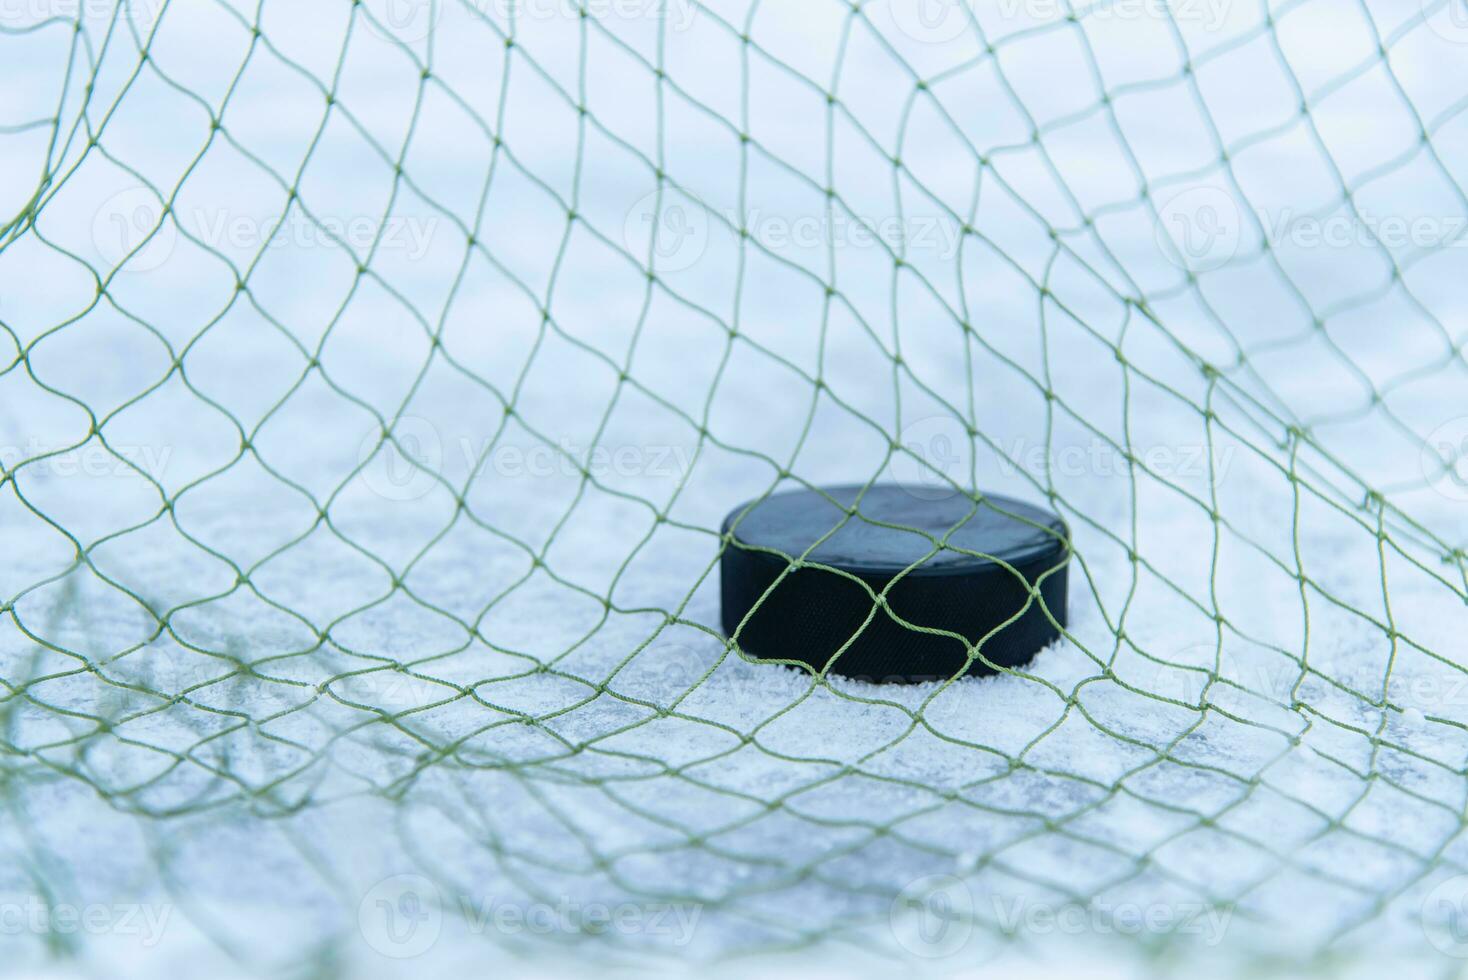 objectif marqué par une le hockey palet dans le objectif net photo